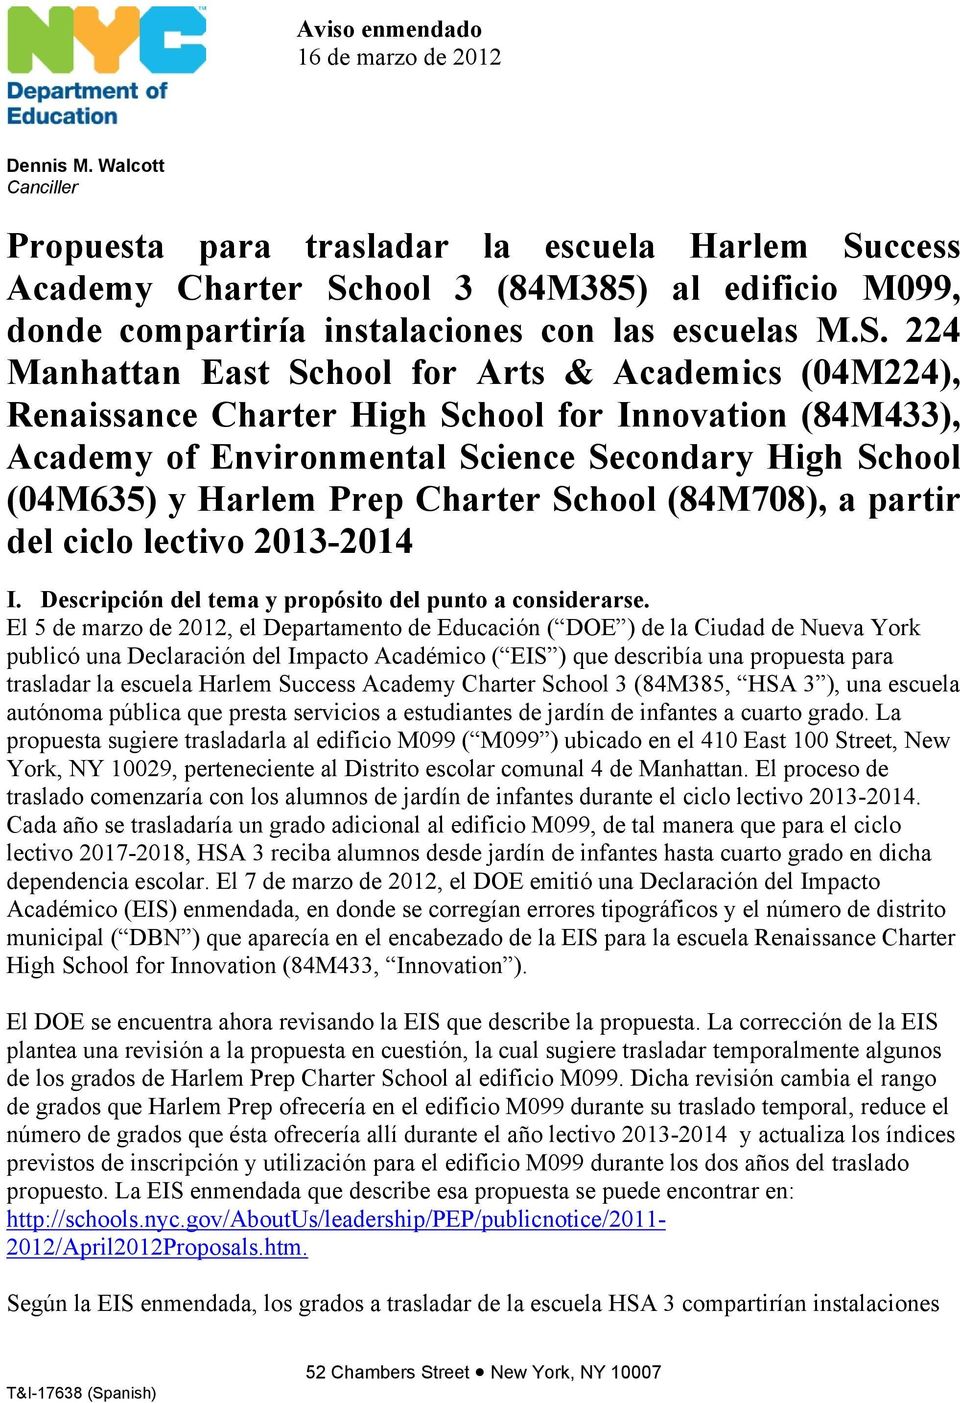 ccess Academy Charter Sc